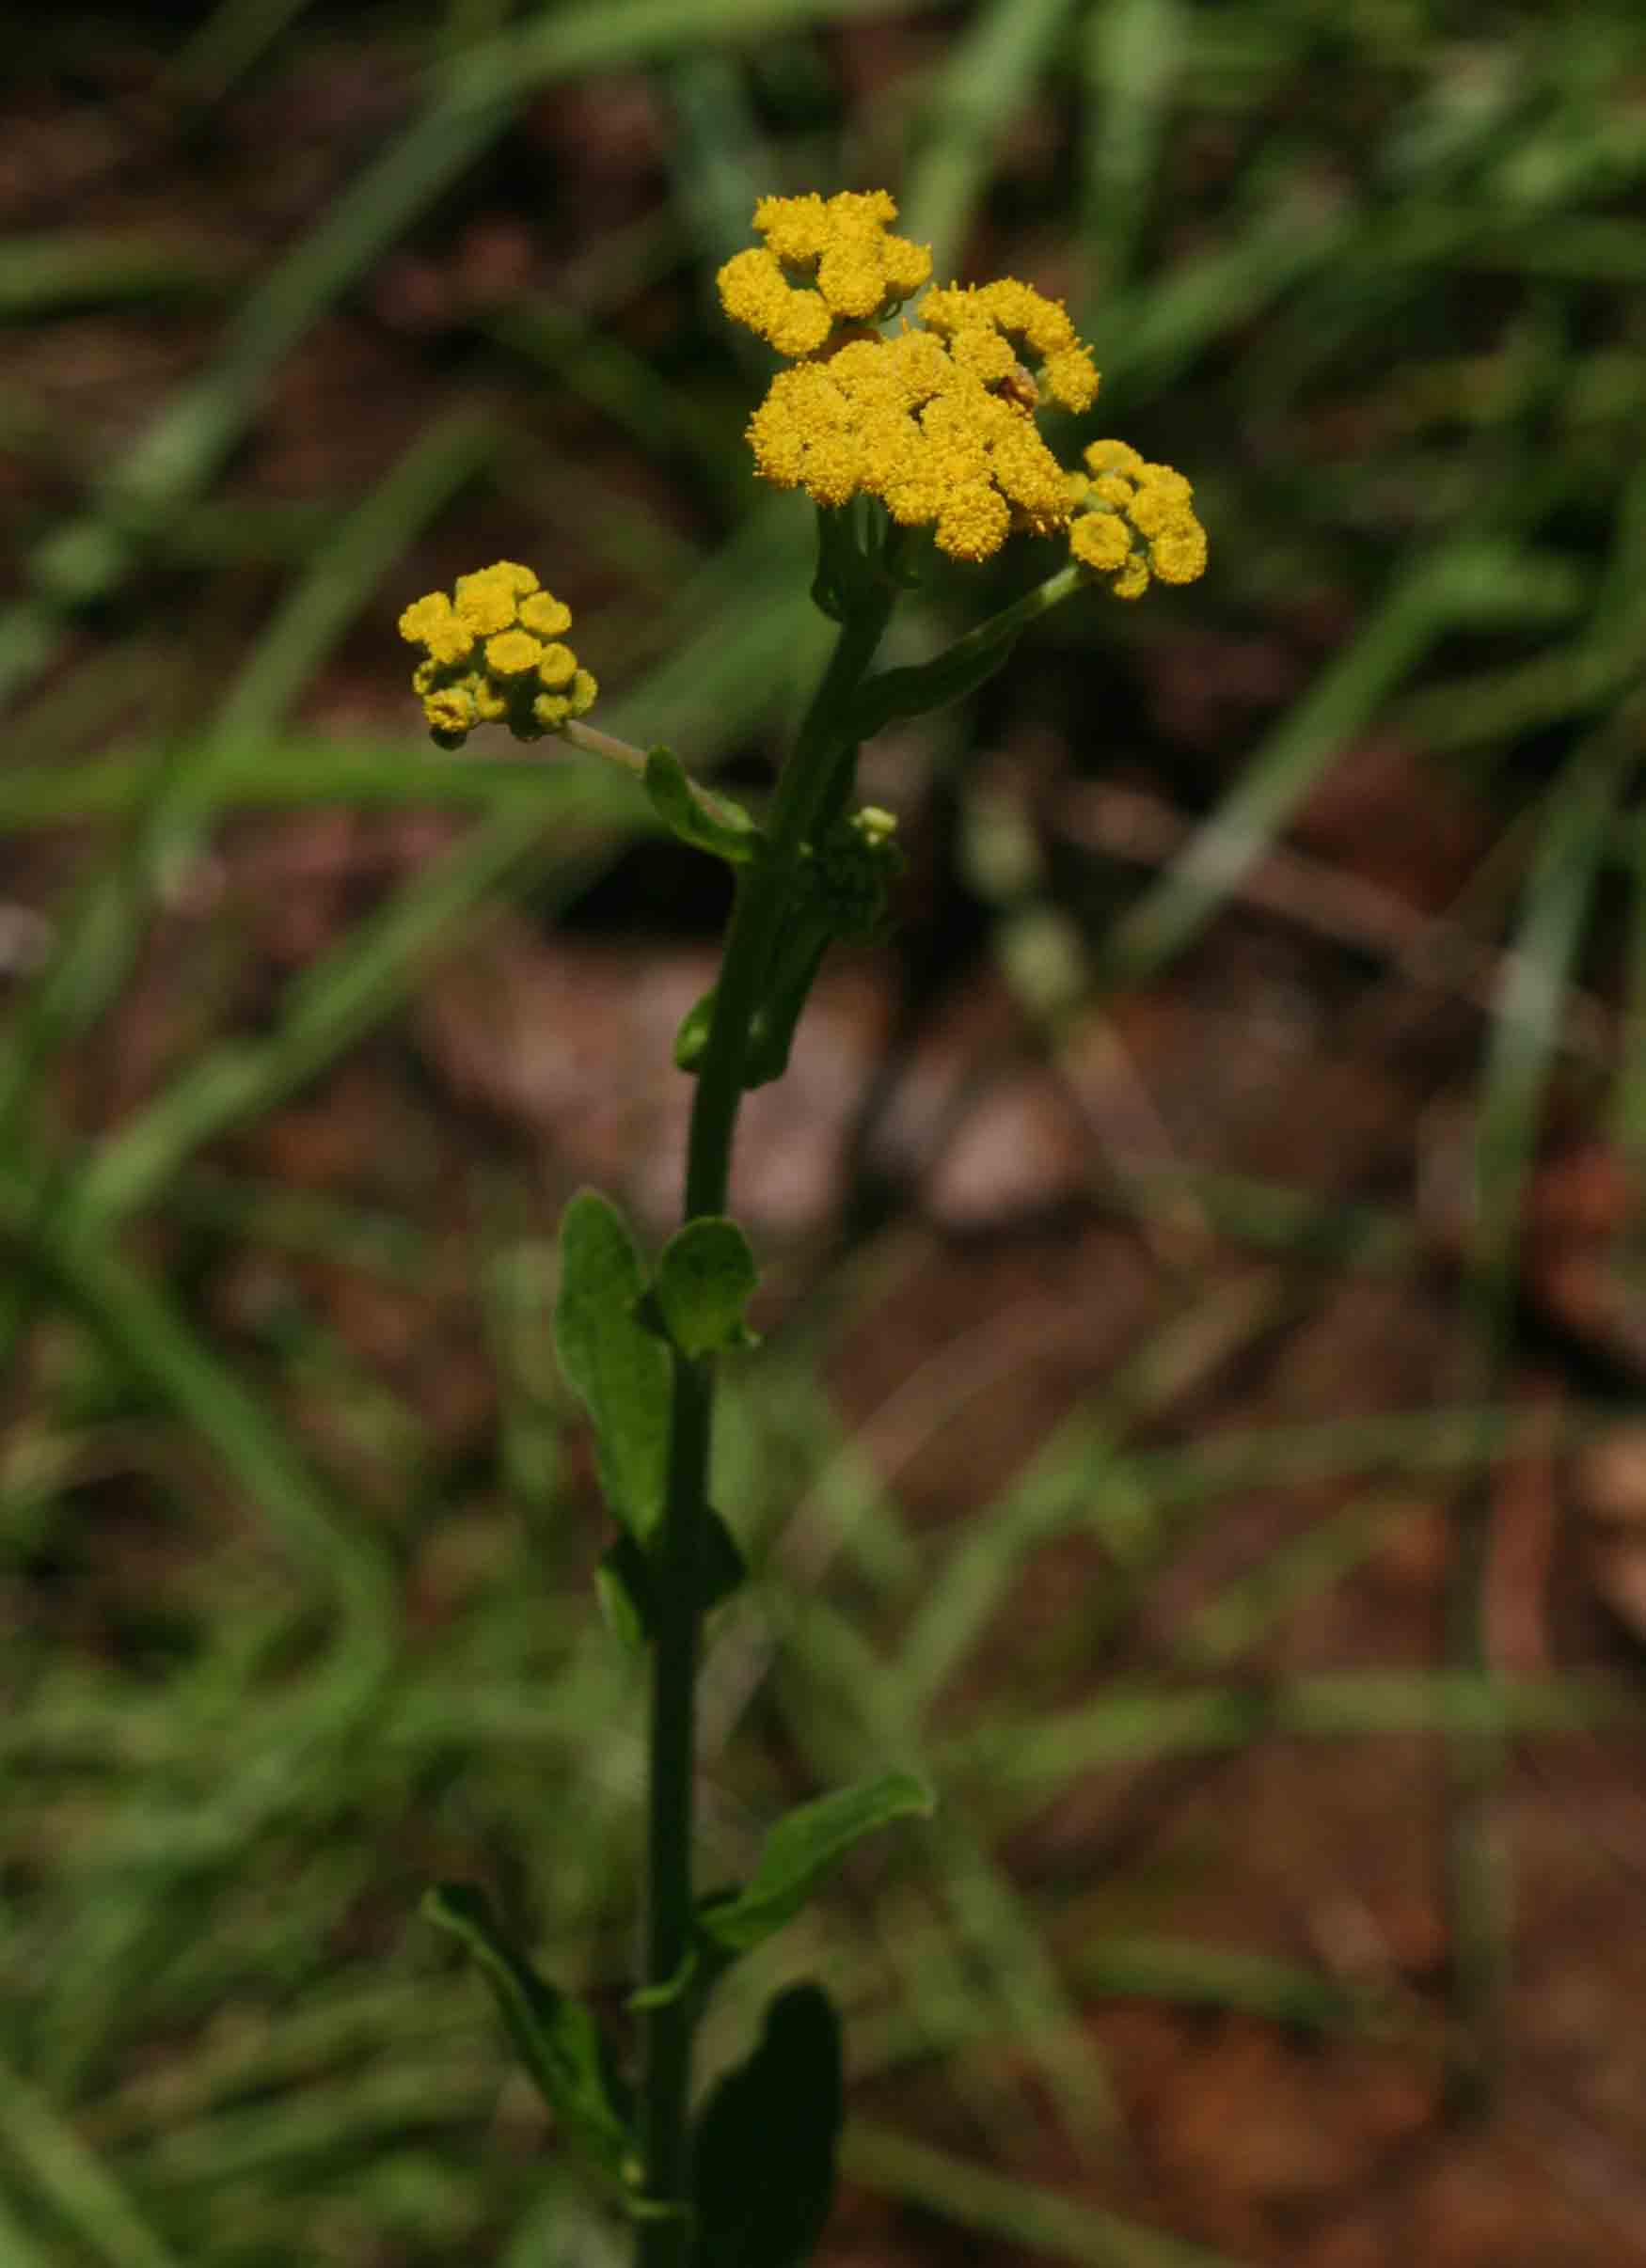 Nidorella auriculata subsp. auriculata